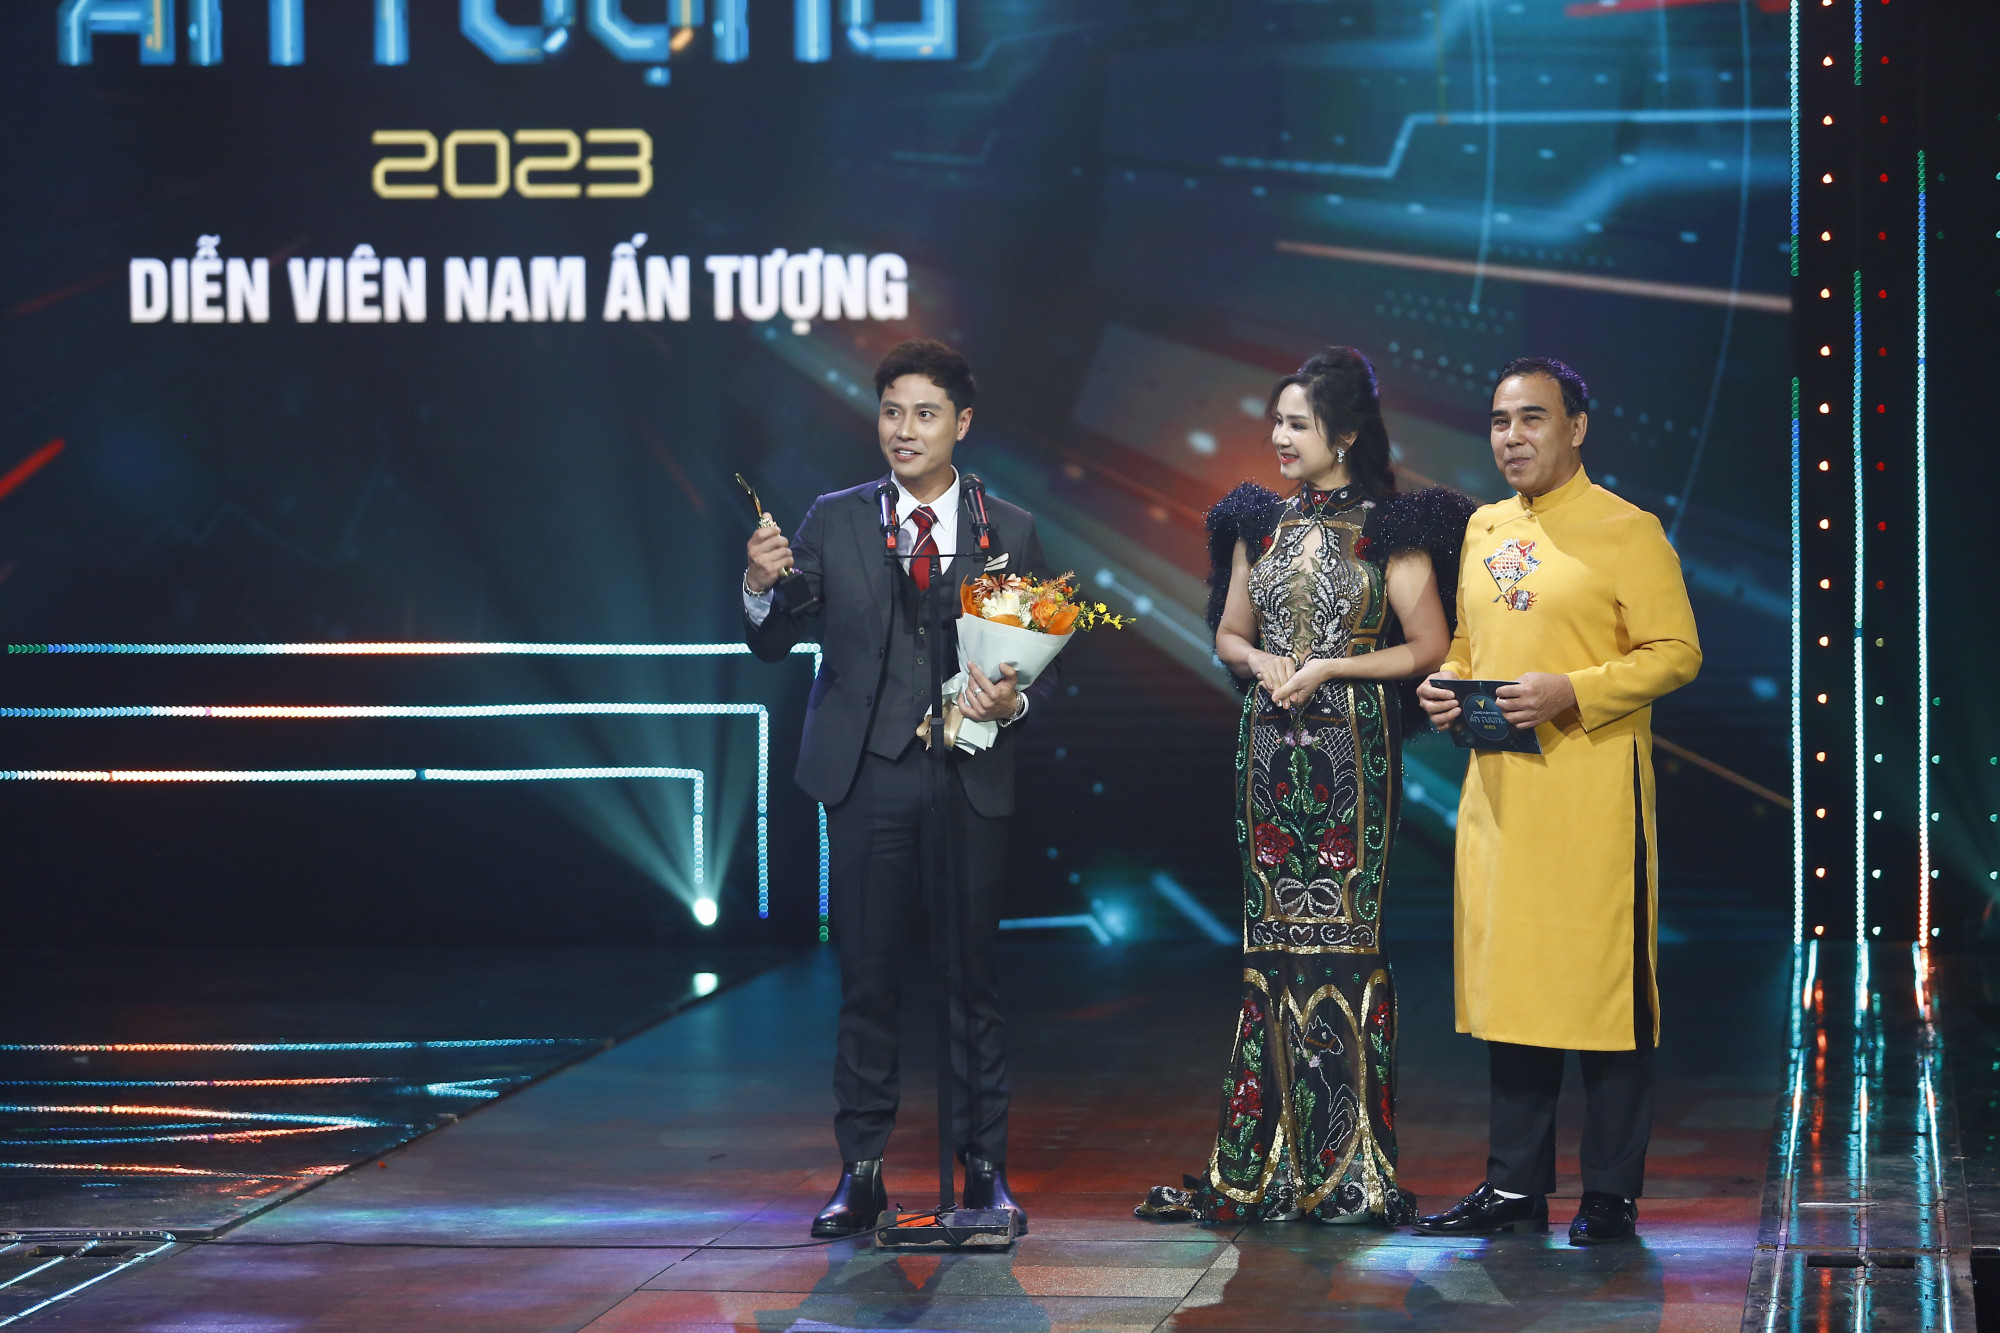 Thanh Sơn nhận giải thưởng diễn xuất thứ hai trong năm nhờ phim 11 tháng 5 ngày